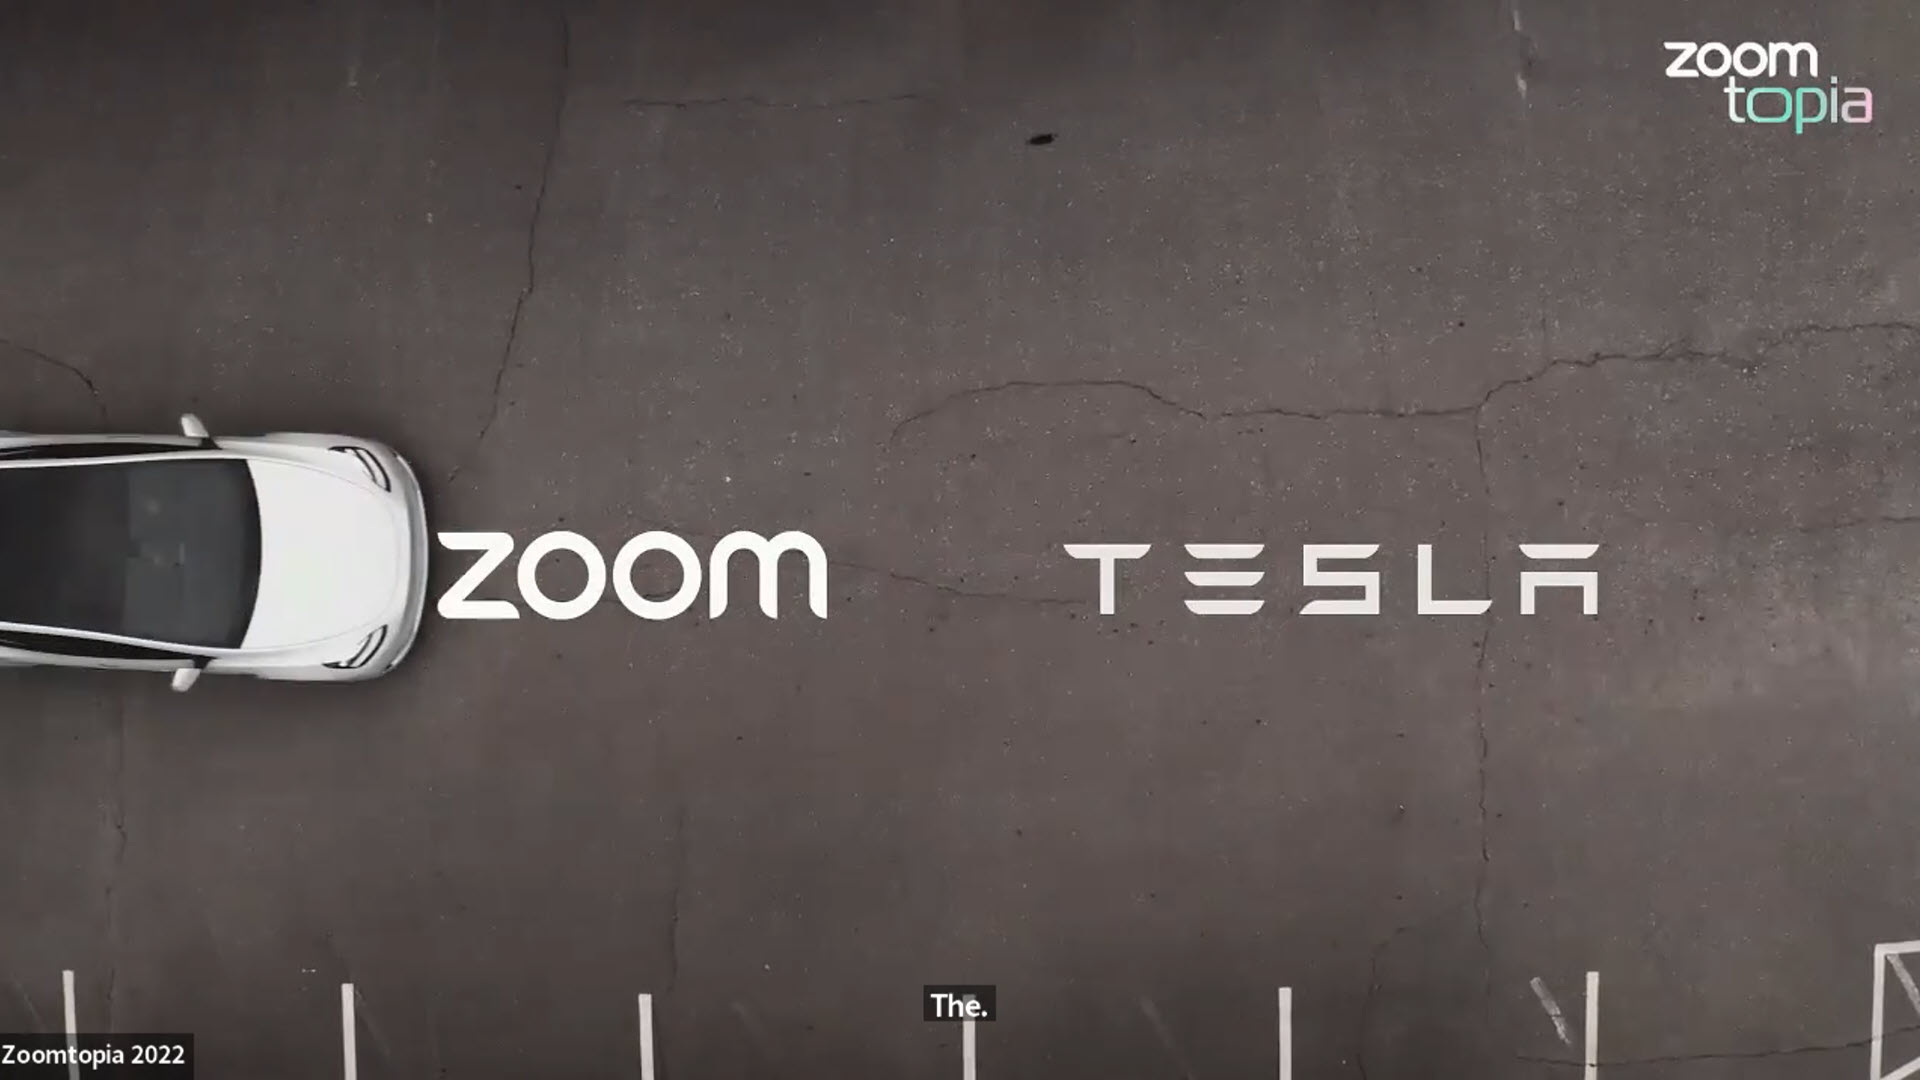 Zoom ha anunciado oficialmente el lanzamiento de una aplicación de videoconferencia próximamente para los automóviles Tesla